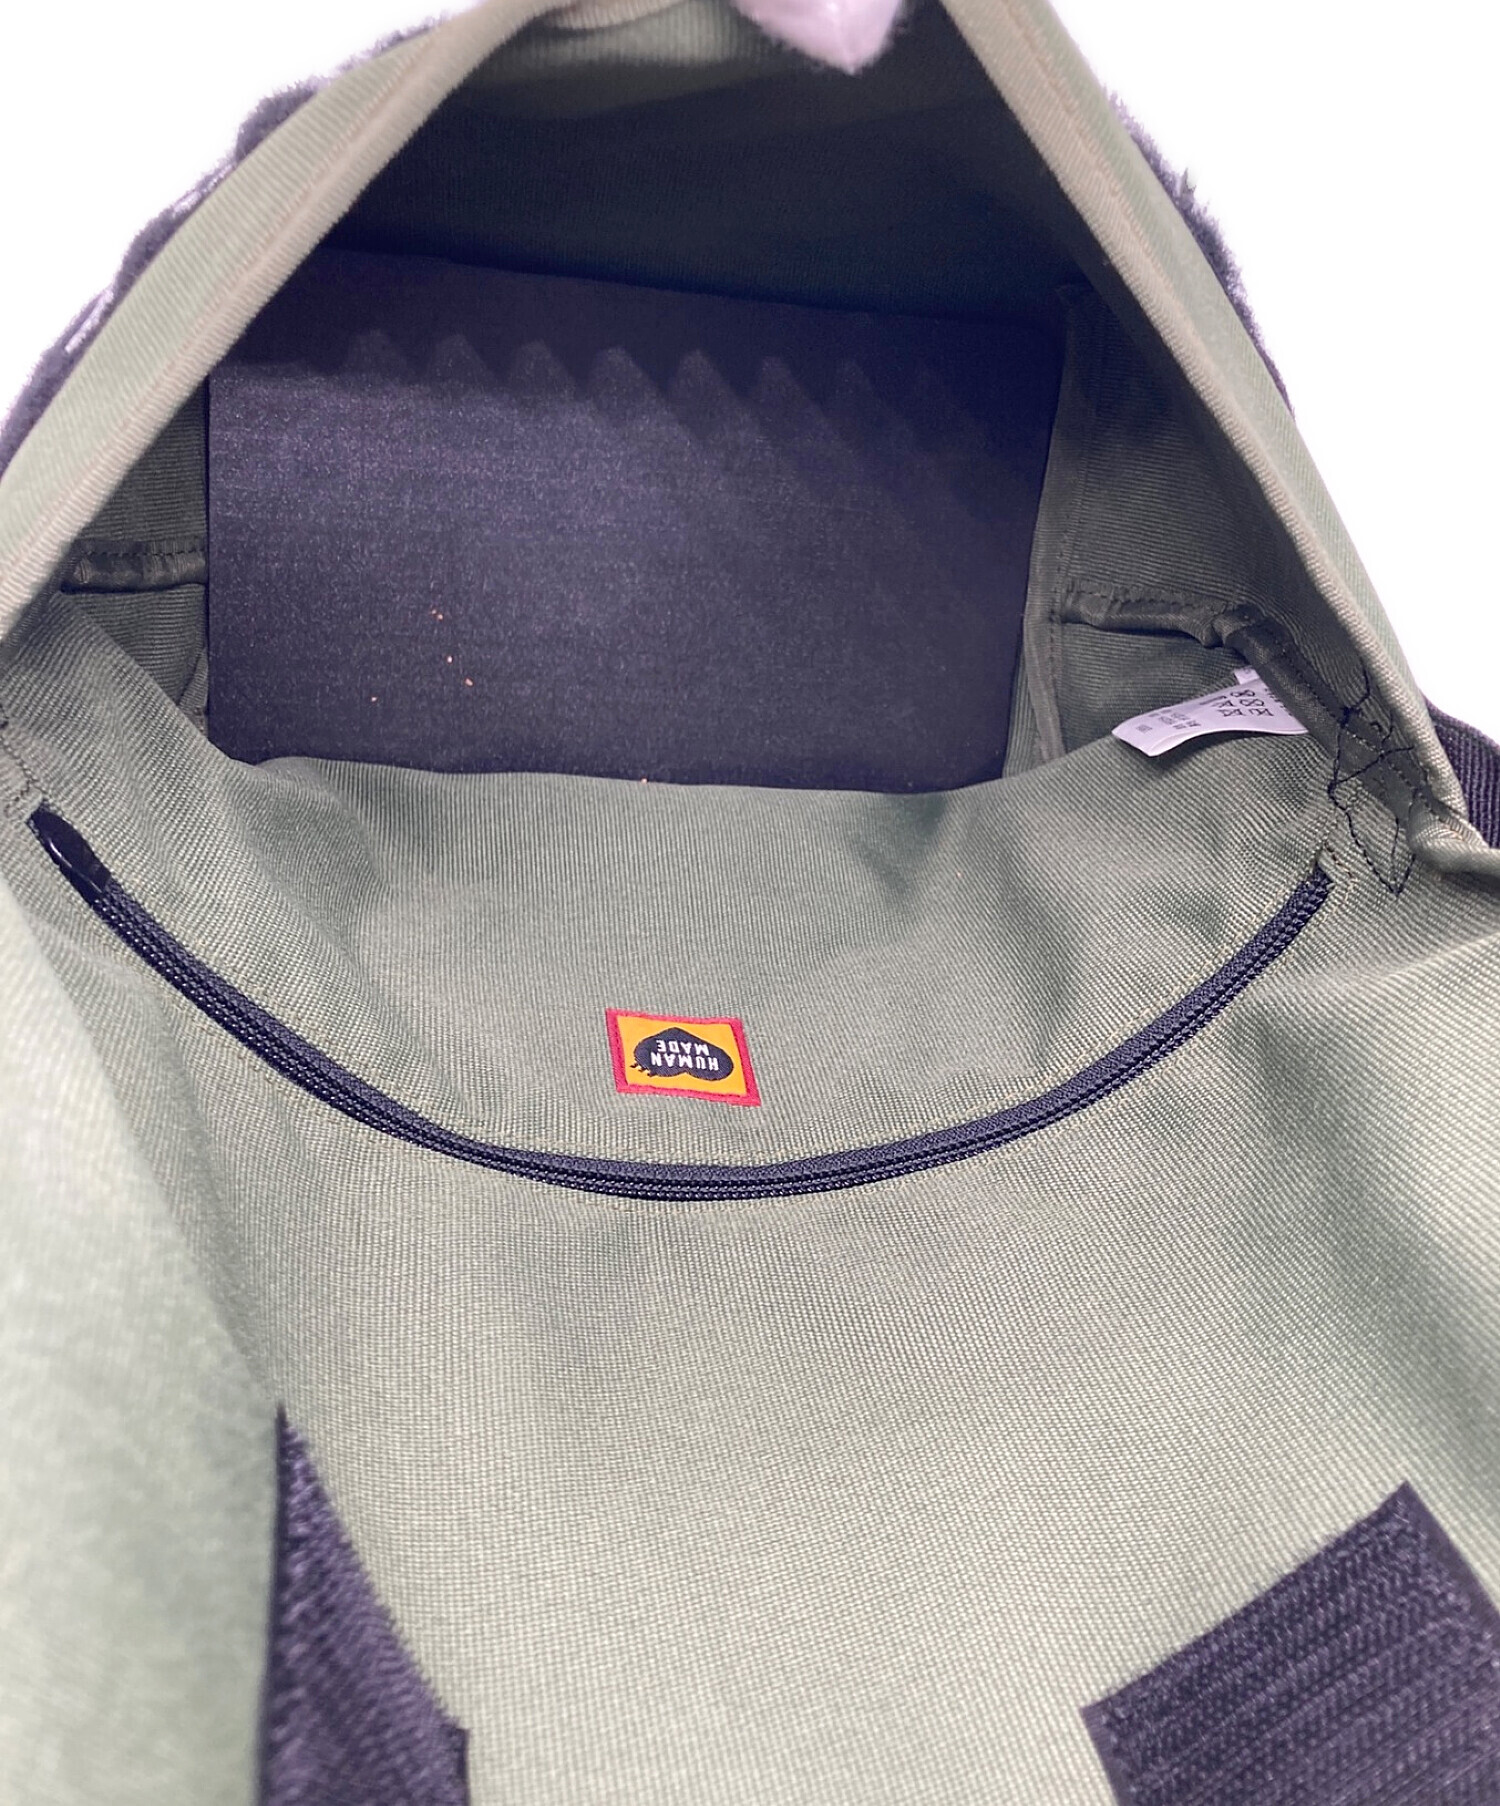 Human Made Small Messenger Bag Purple